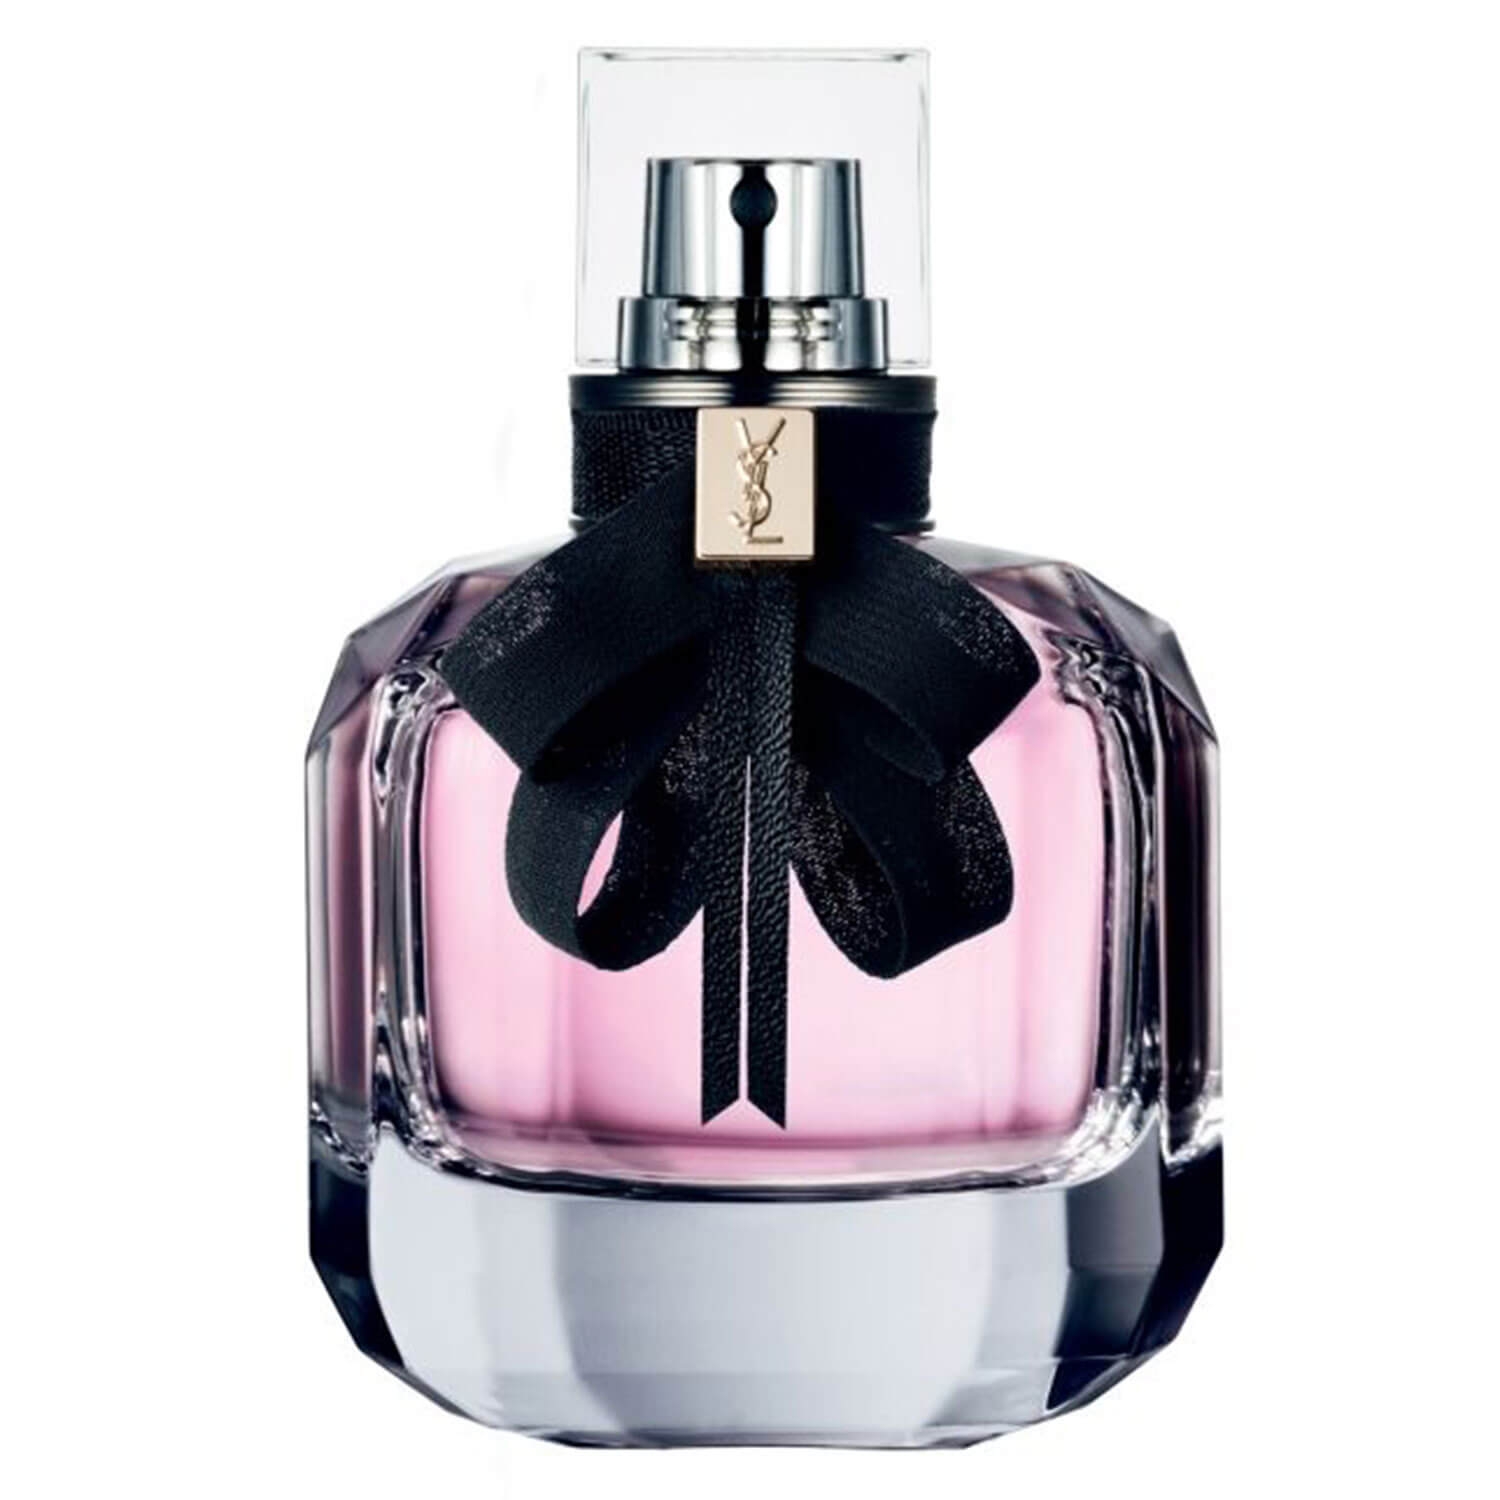 Produktbild von Mon Paris - Eau de Parfum